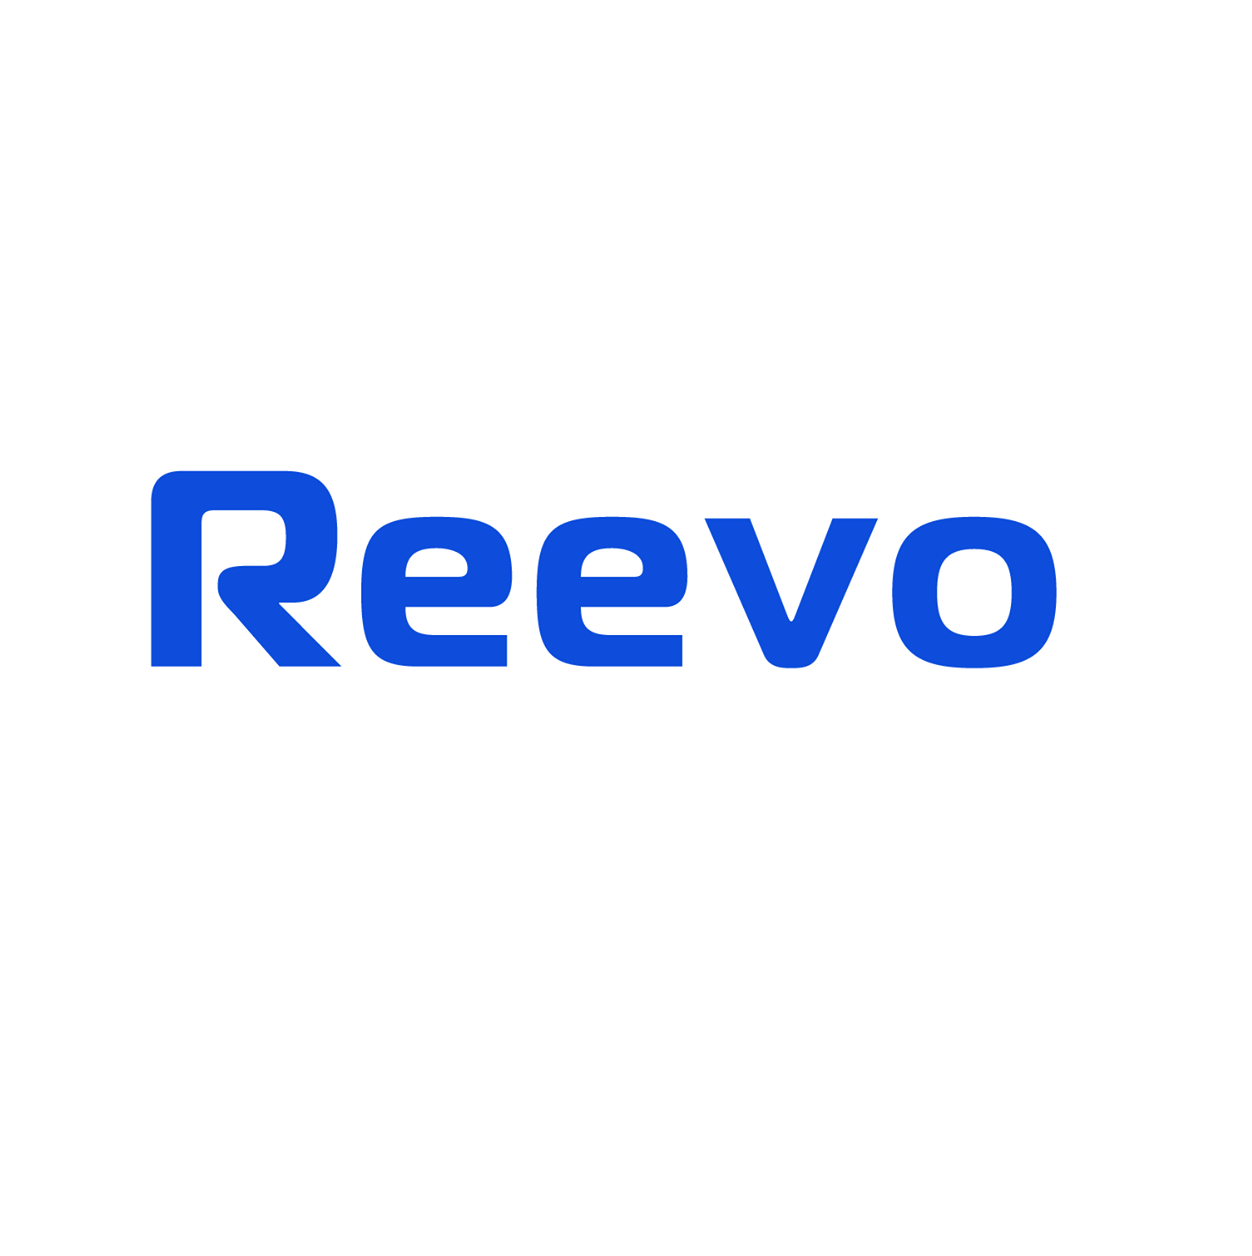 Reevo Bike Review